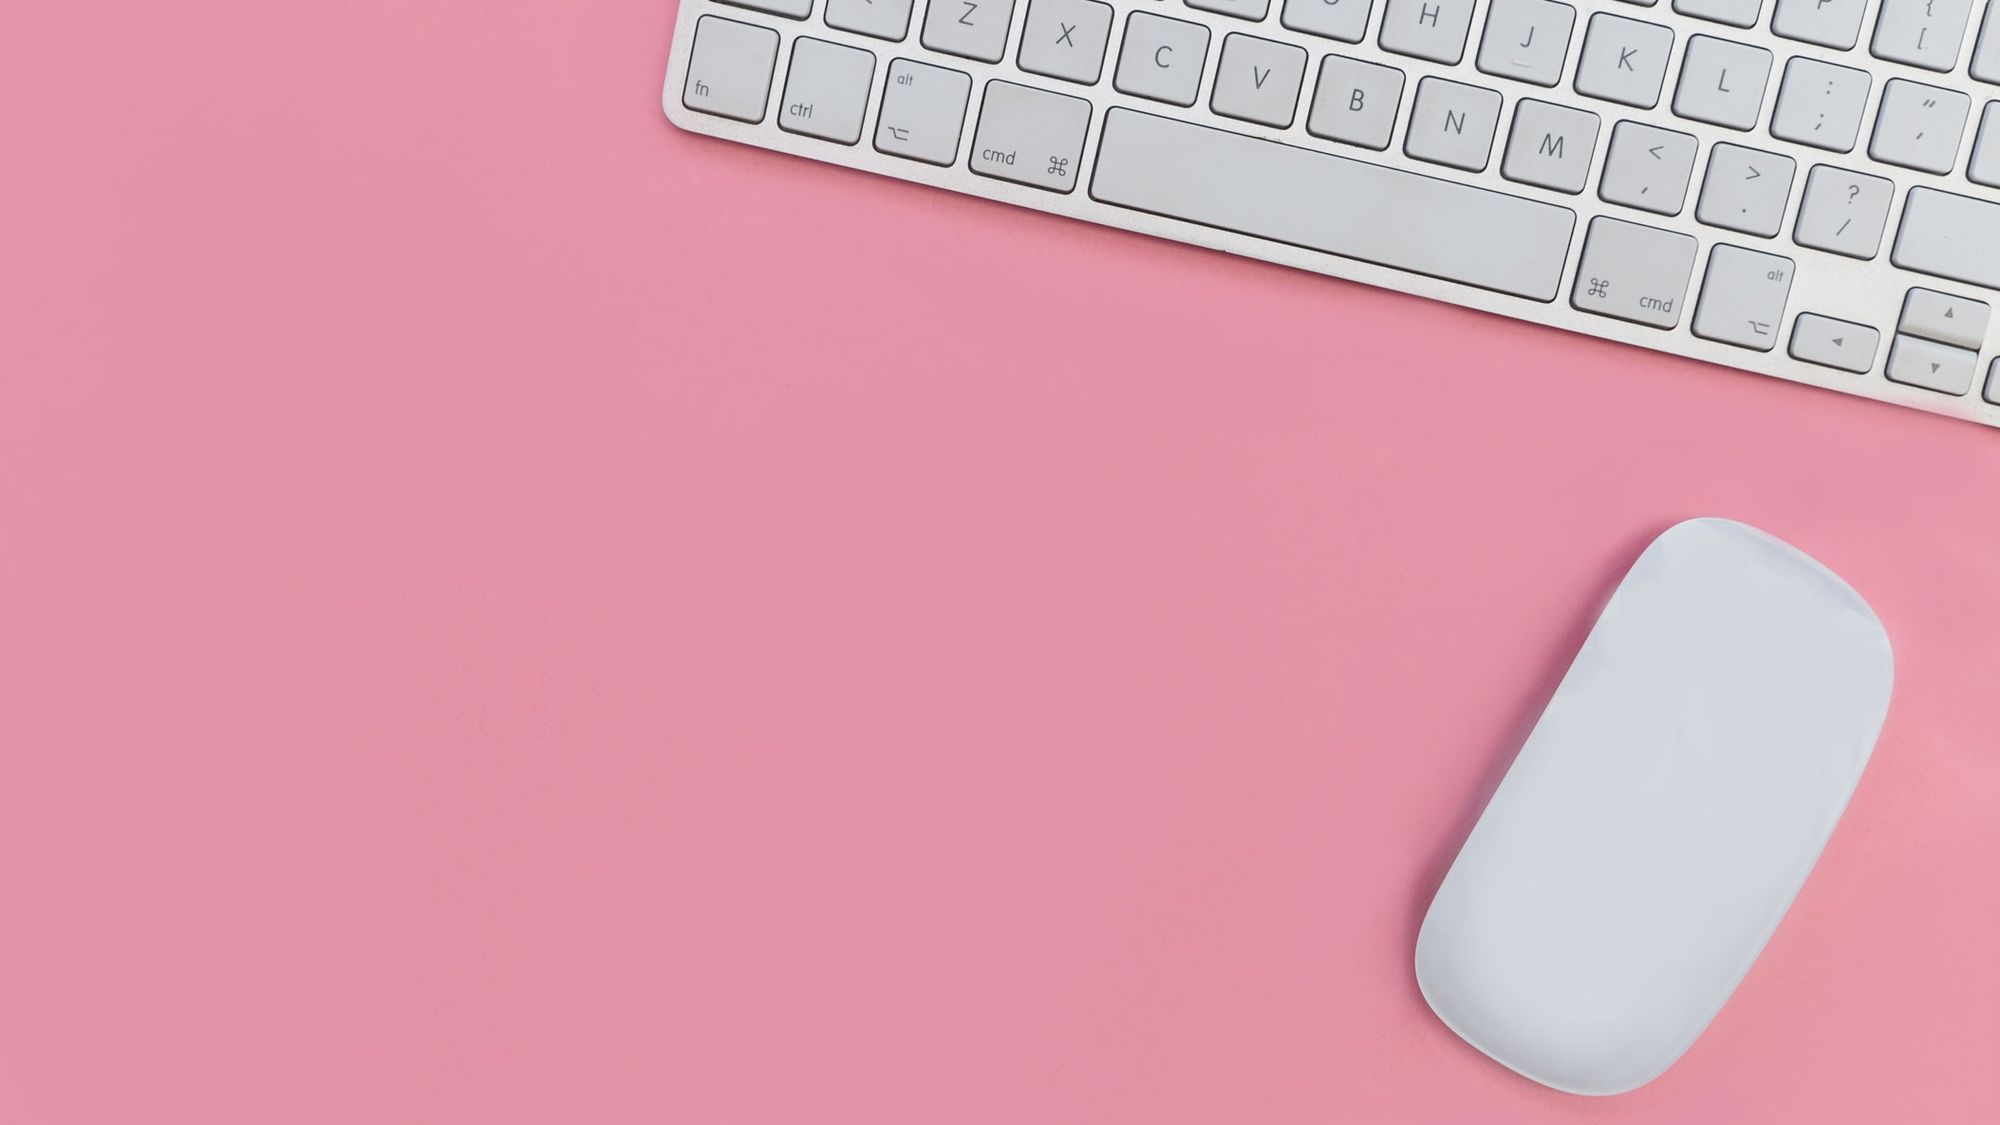 MacBook может получить клавиатуру со съёмной клавишей, работающий как мышь